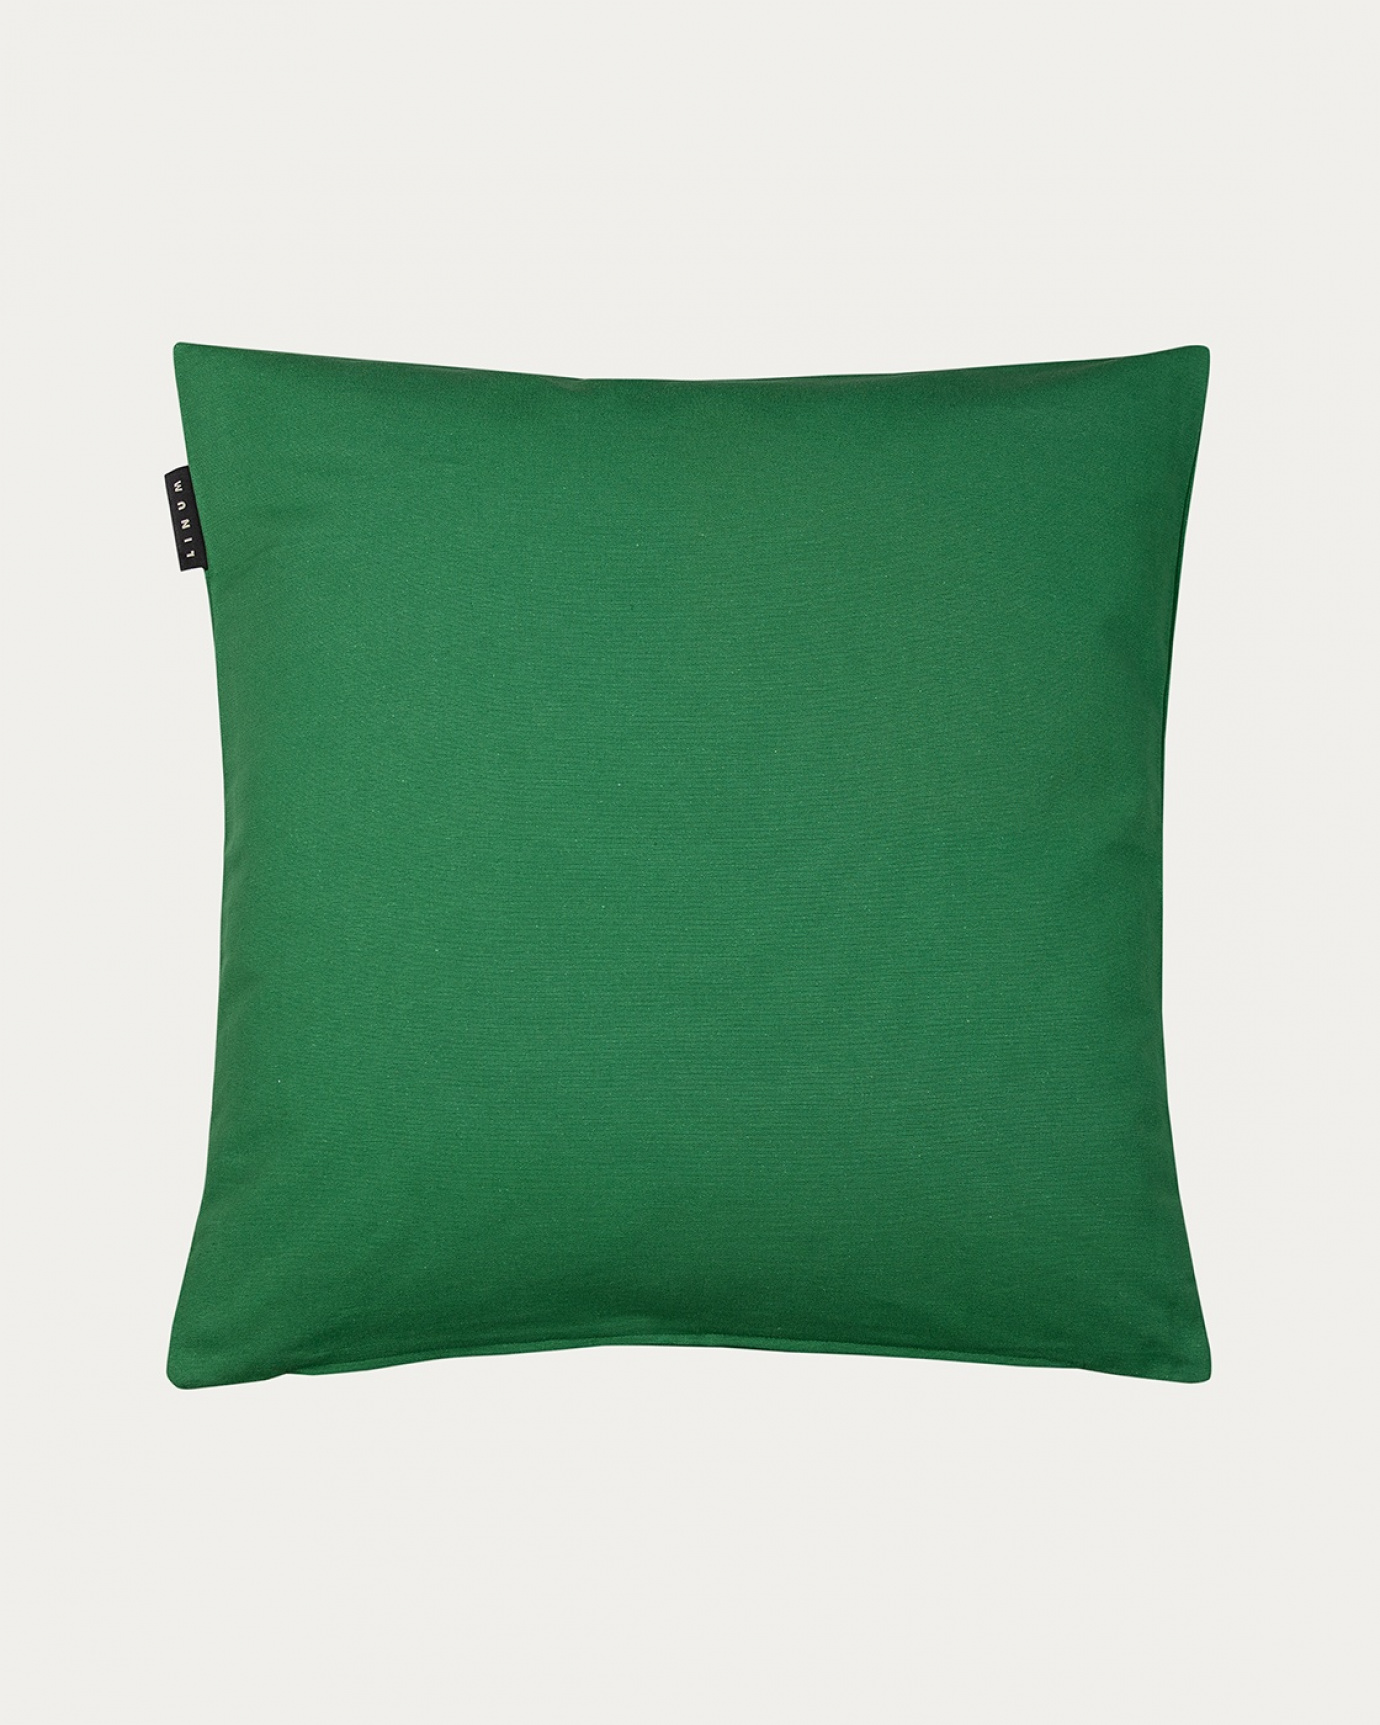 Produktbild ängsgrön ANNABELL kuddfodral av mjuk bomull från LINUM DESIGN. Storlek 50x50 cm.